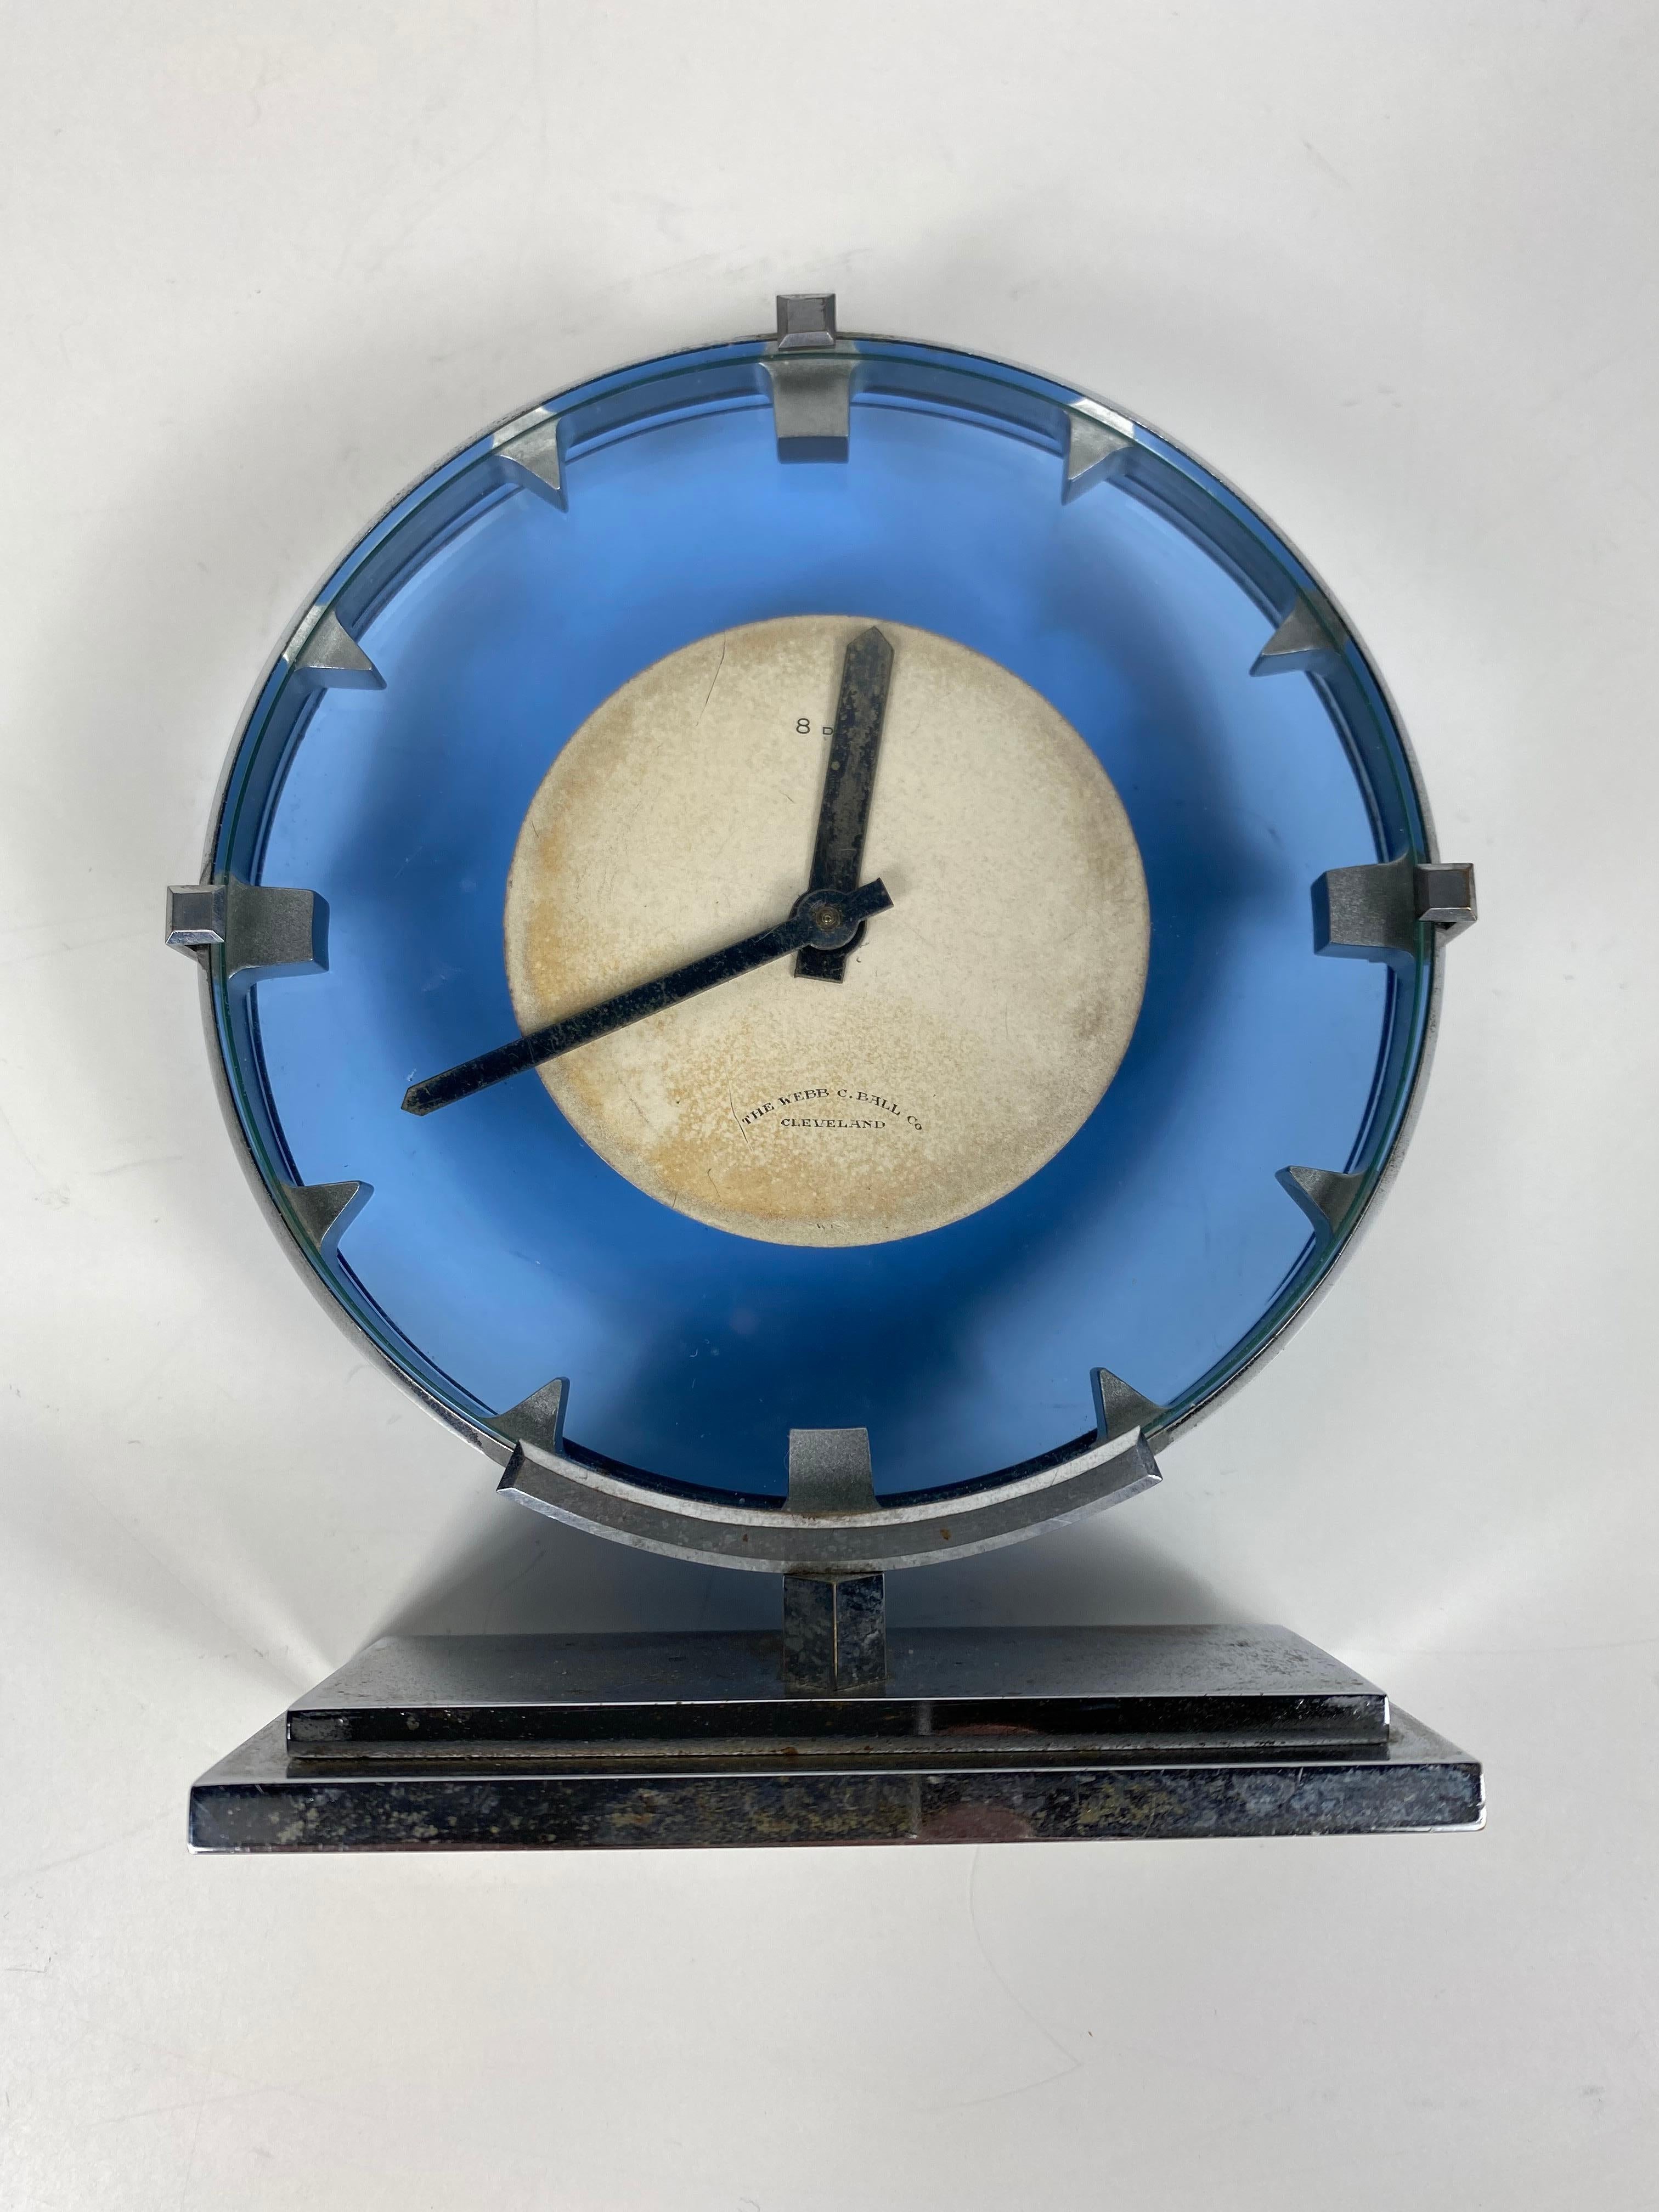 Atemberaubende Edelstahl und blauem Glas Art Deco / Machine Age Uhr hergestellt von The Webb C.Ball co...Cleveland, Wind-up 8 Tage Tischuhr, Classic modernist Design... läuft und hält perfekte Zeit.

Die WEBB C. BALL CO. war einer der größten